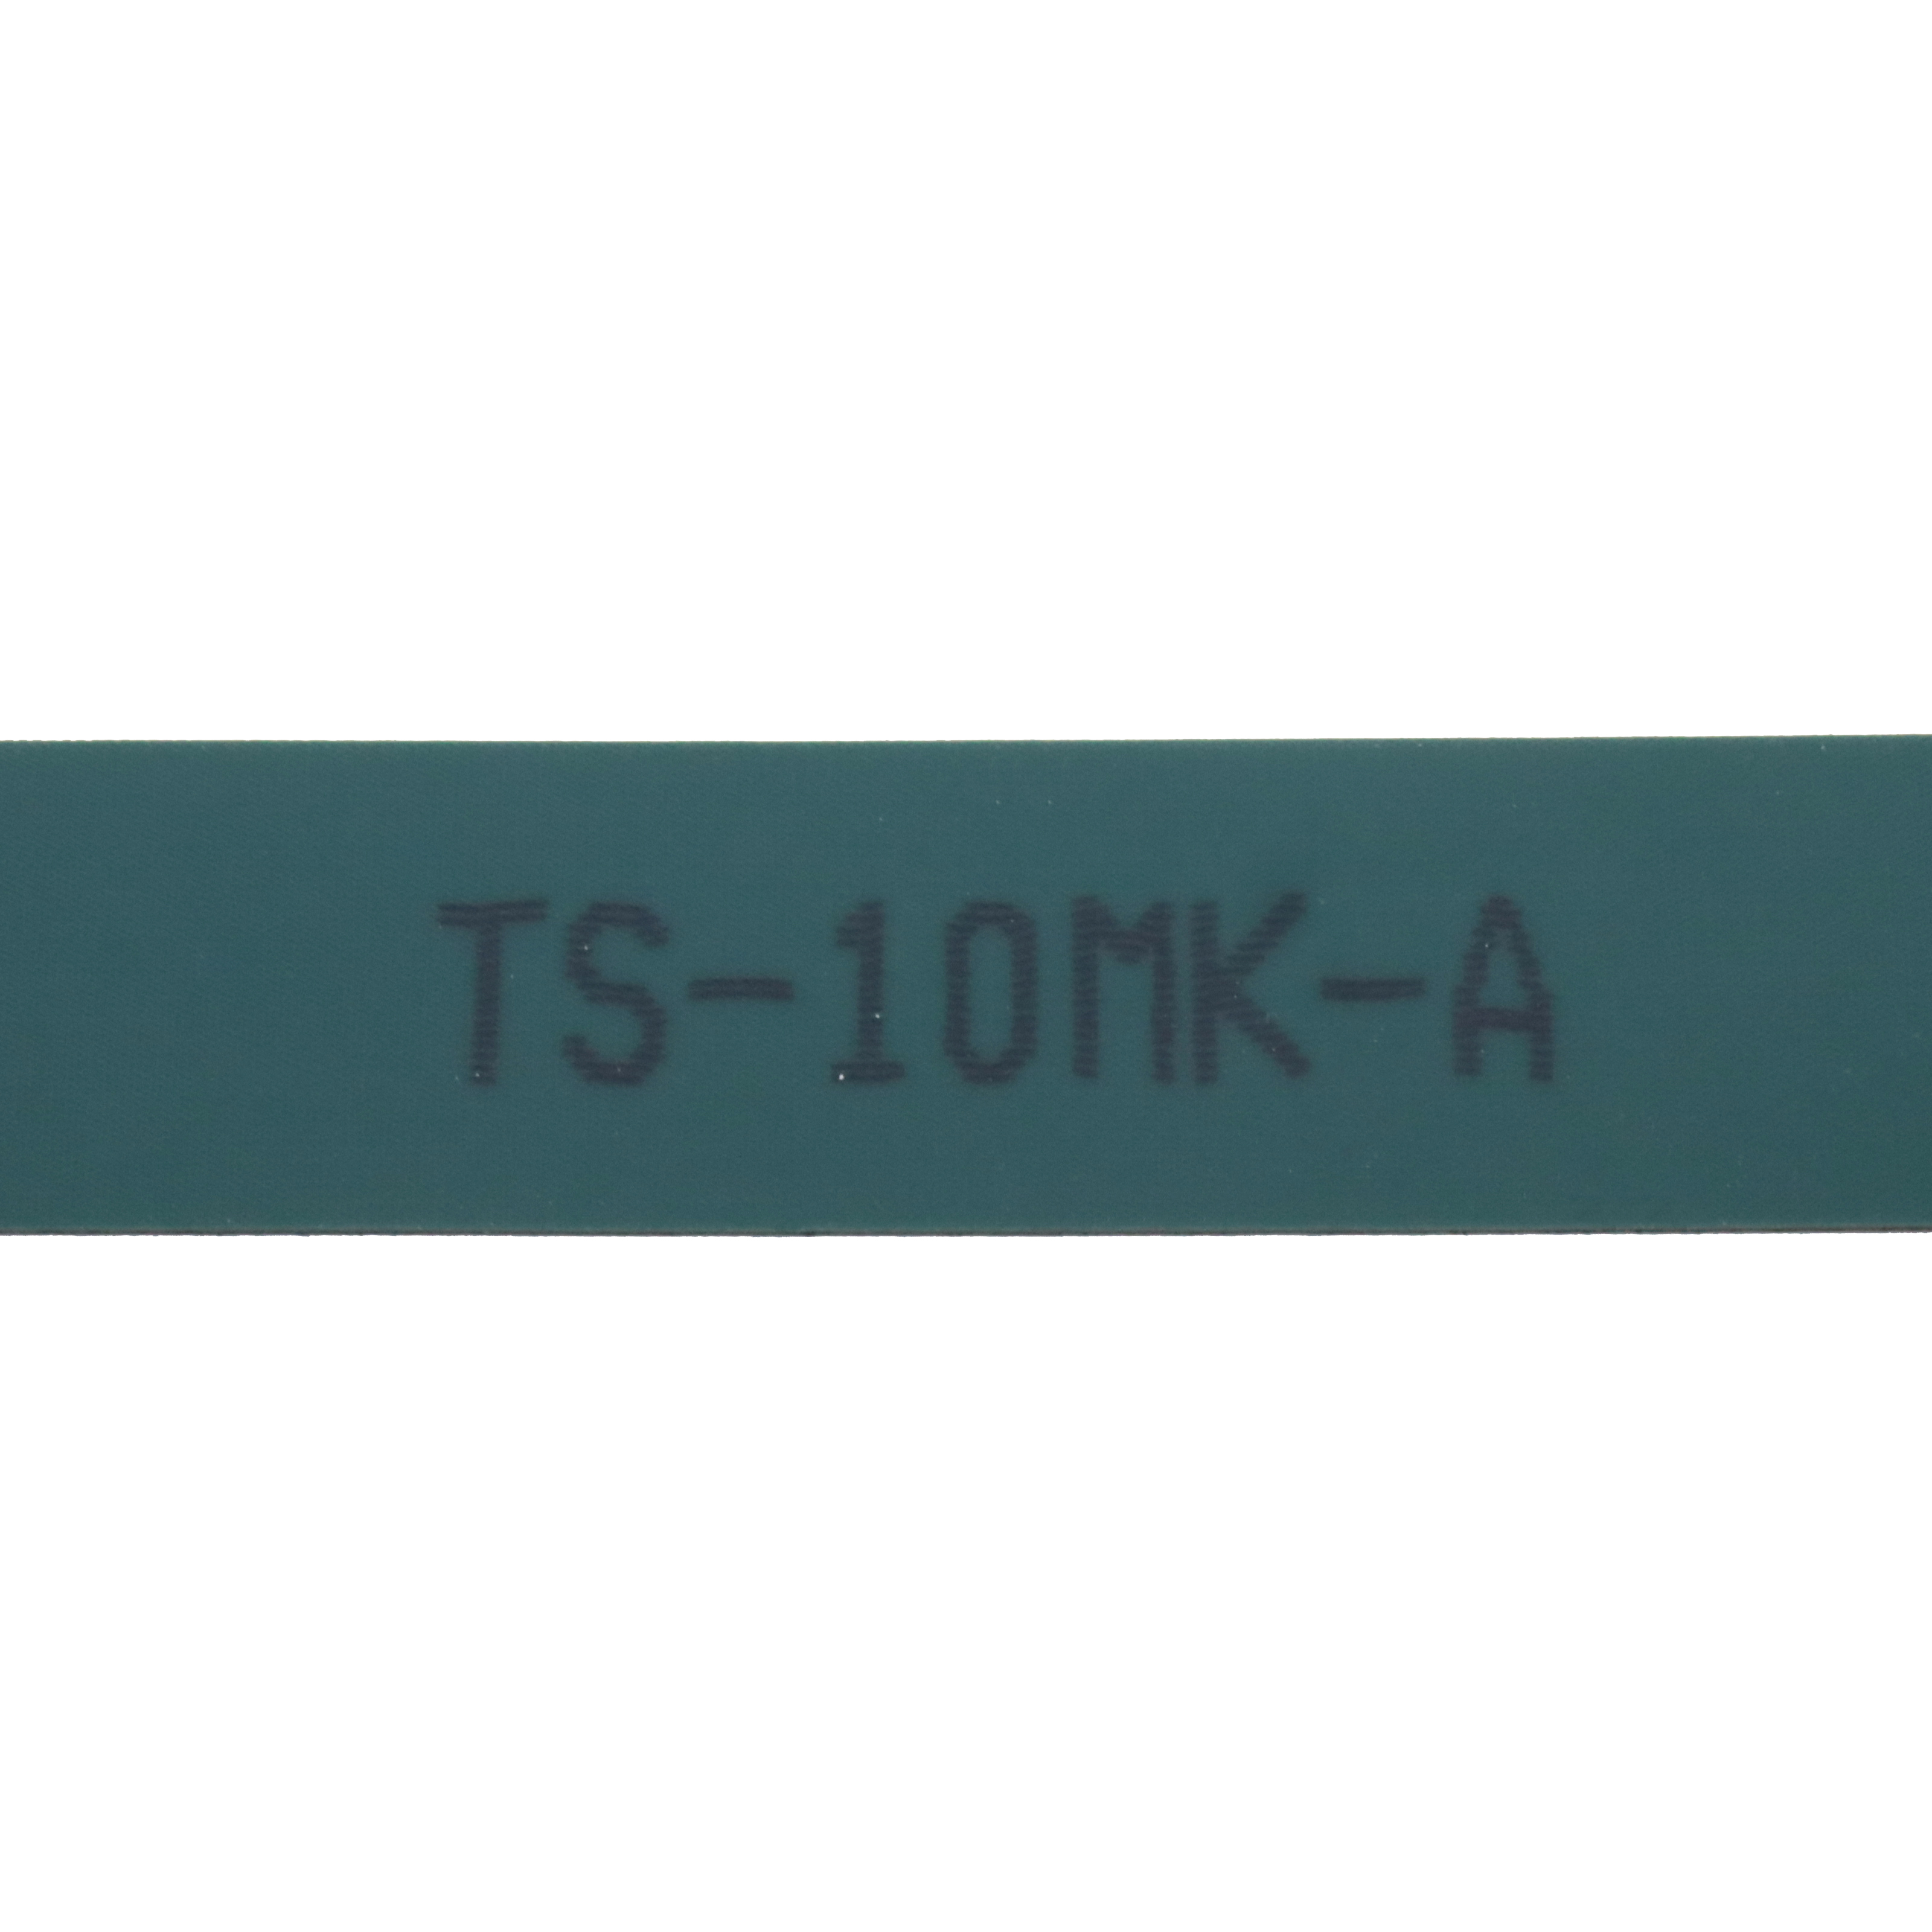 TS-10MK-A